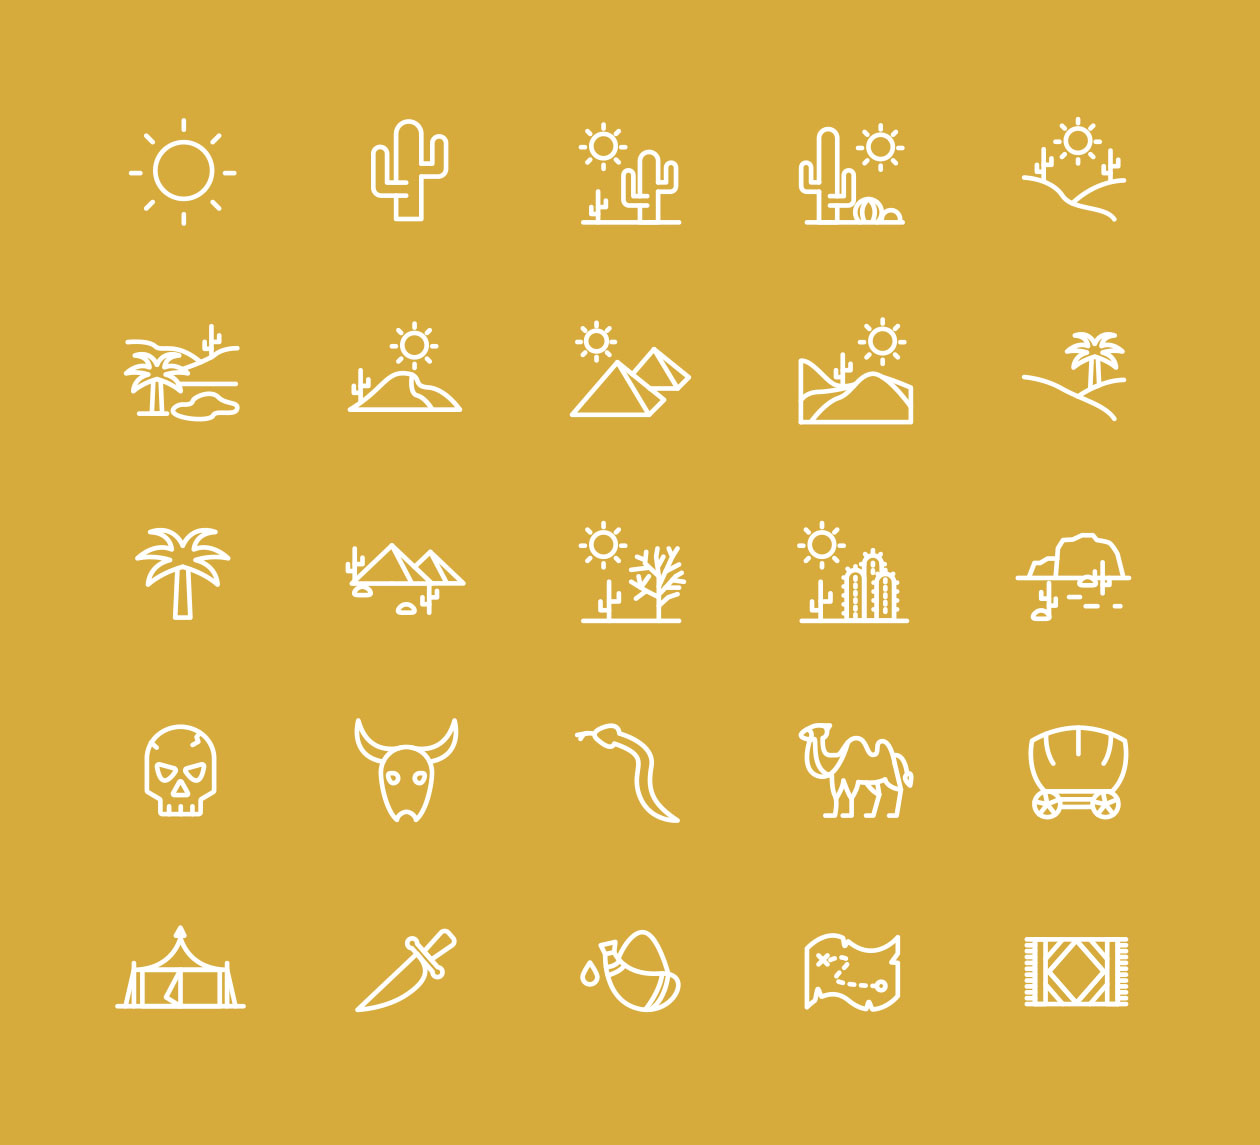 25枚沙漠主题线性矢量图标 25 Desert Line Icons – Vector插图